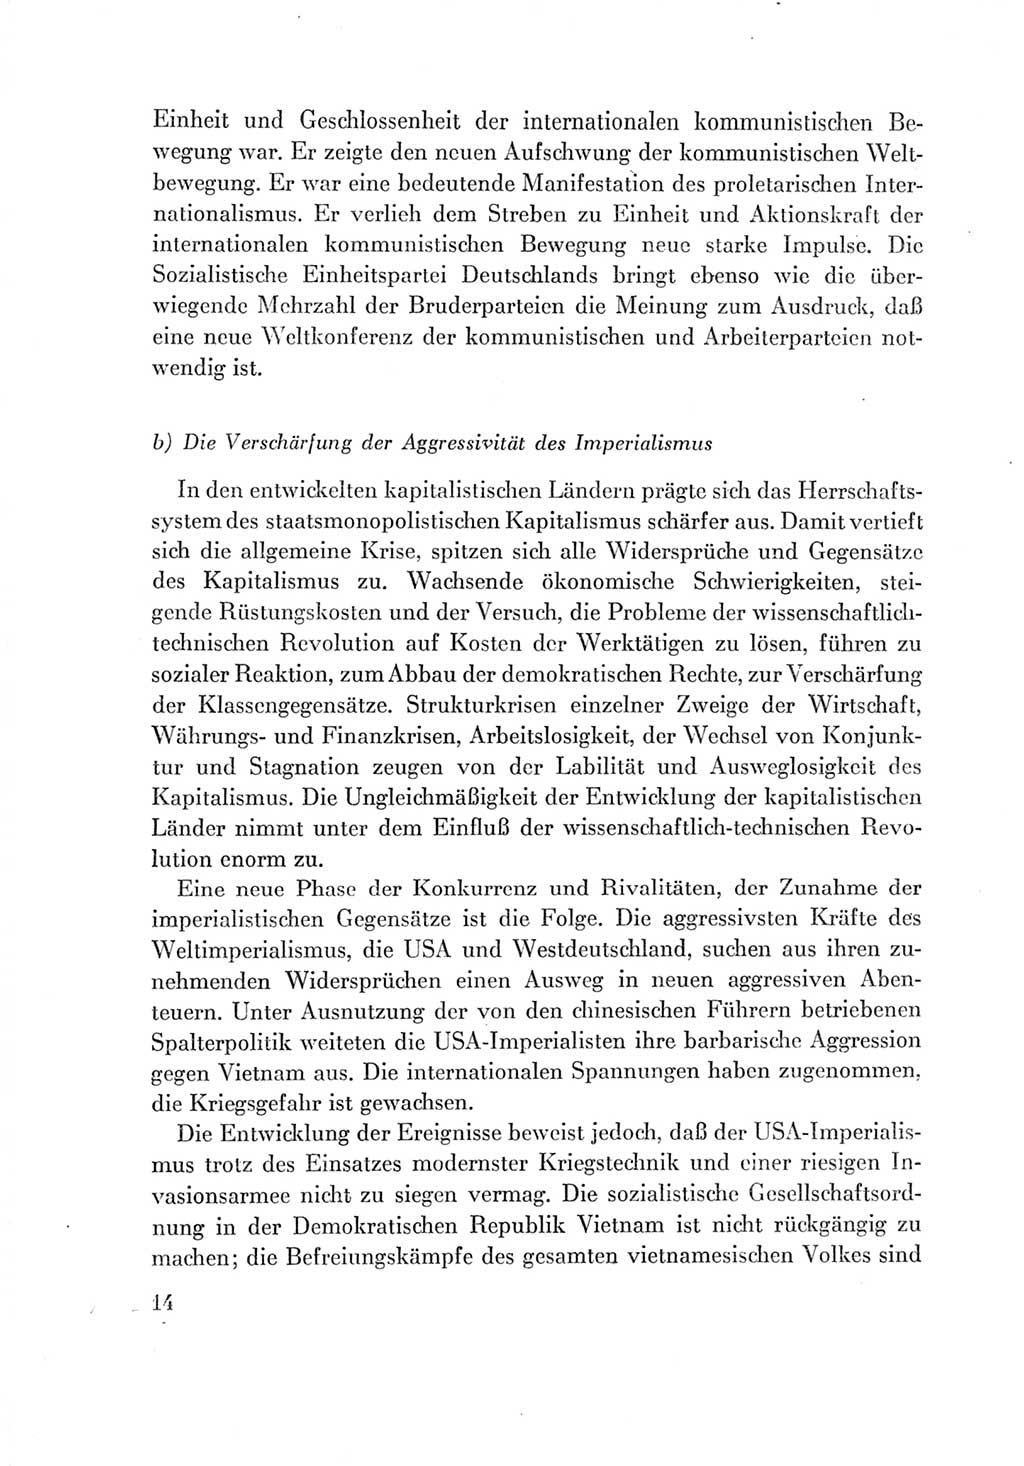 Protokoll der Verhandlungen des Ⅶ. Parteitages der Sozialistischen Einheitspartei Deutschlands (SED) [Deutsche Demokratische Republik (DDR)] 1967, Band Ⅳ, Seite 14 (Prot. Verh. Ⅶ. PT SED DDR 1967, Bd. Ⅳ, S. 14)